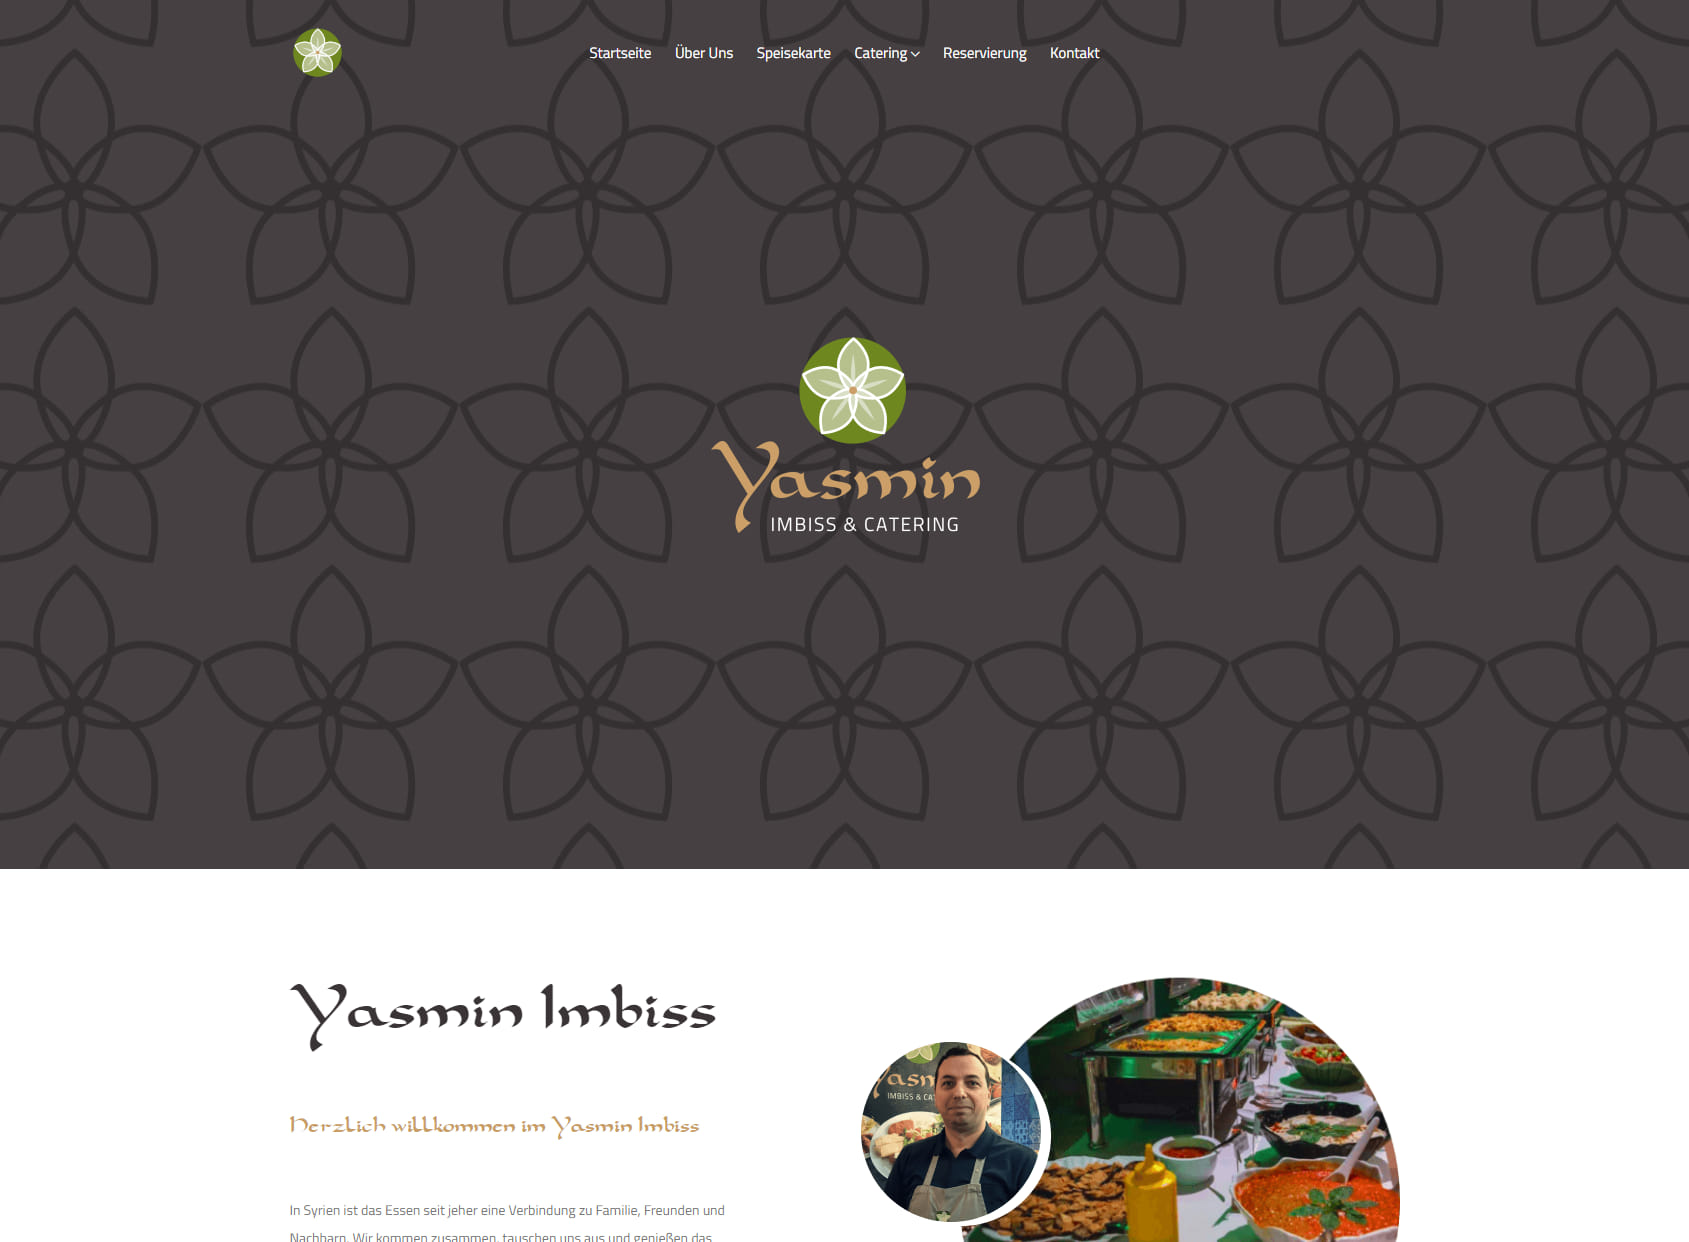 Yasmin Imbiss & Catering